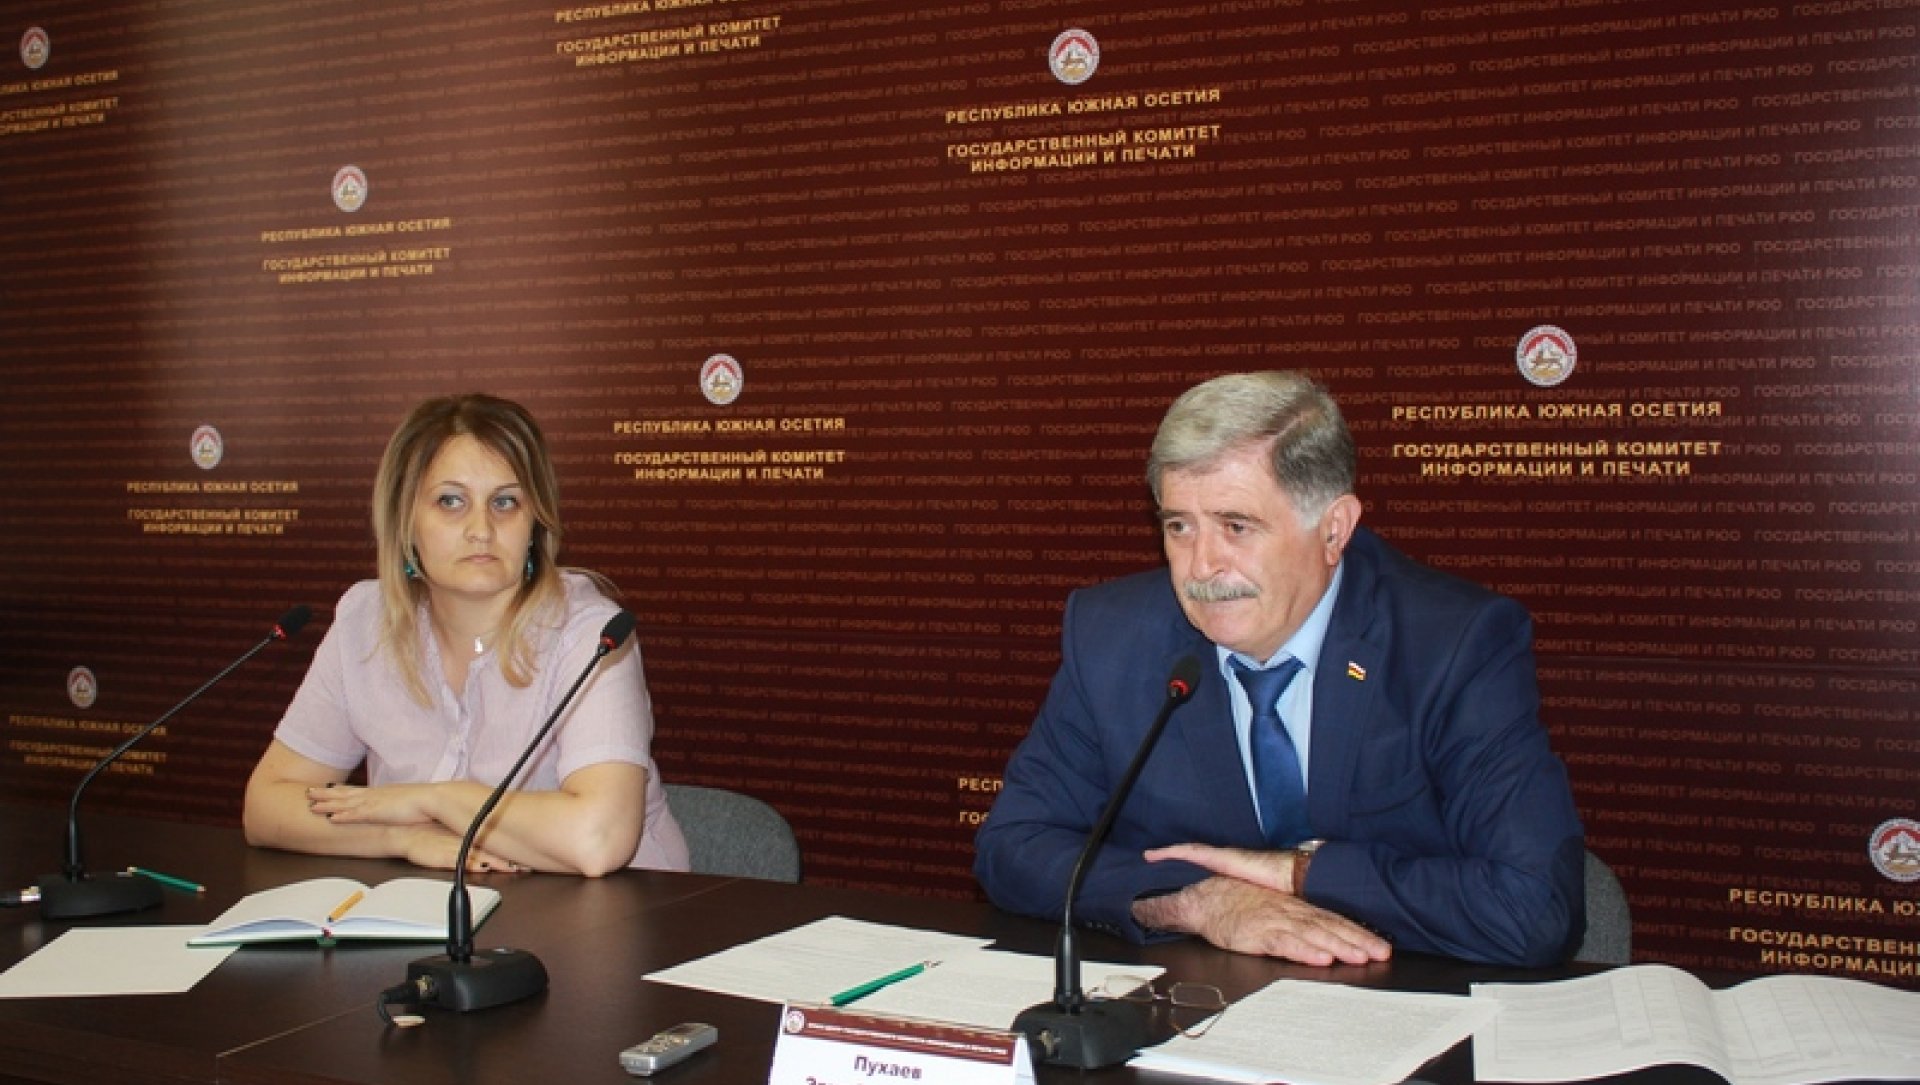 Эрик Пухаев: «Процесс формирования Правительства почти завершен»